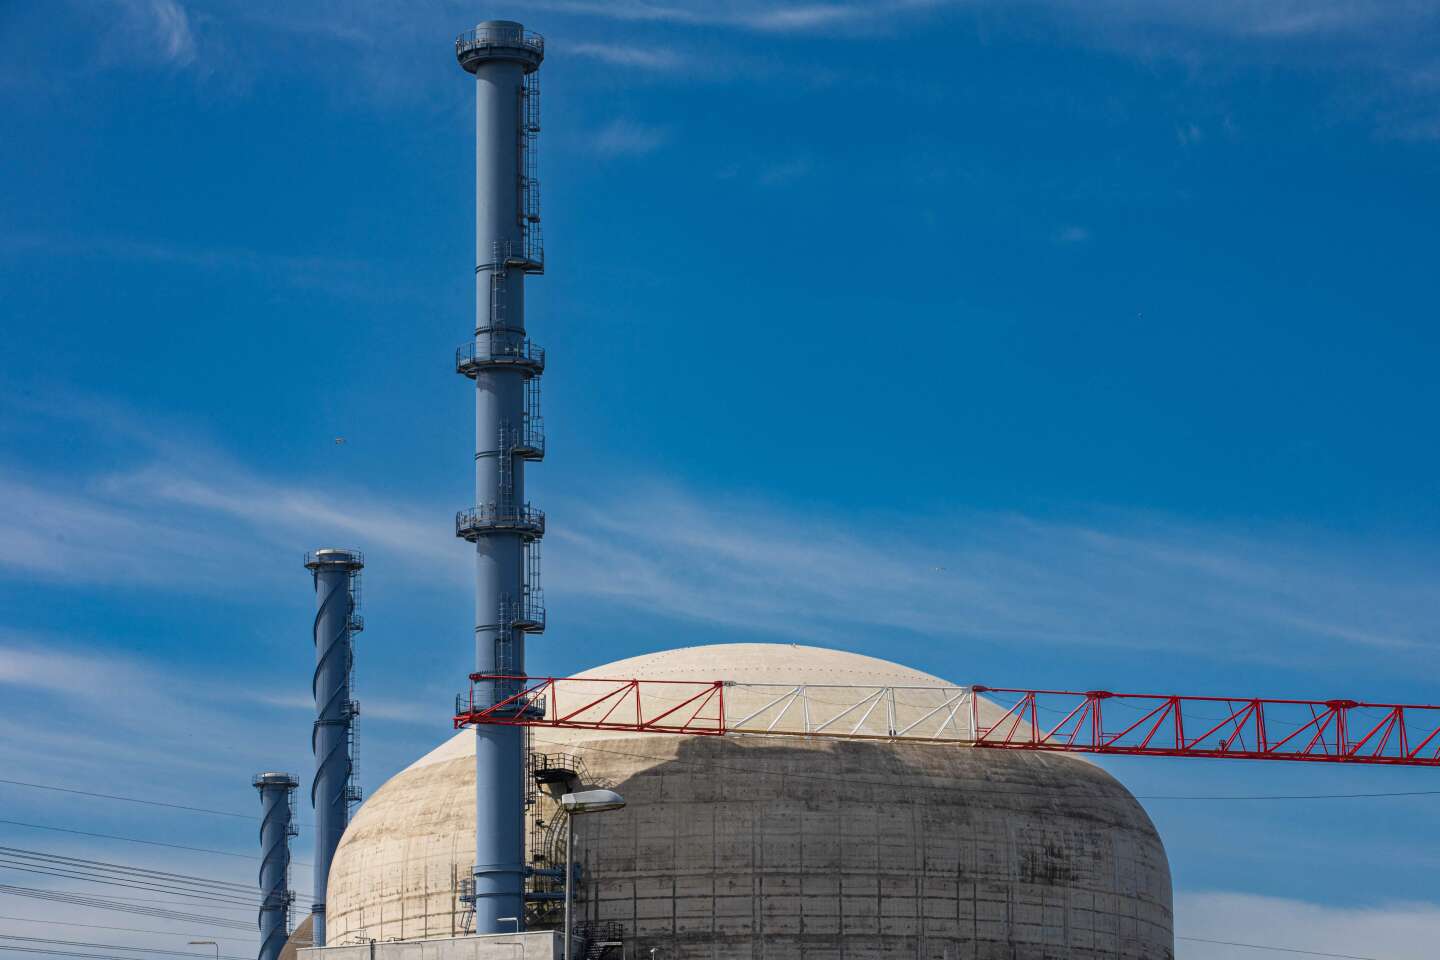 Nucléaire : l’EPR de Flamanville accuse un nouveau retard de six mois et 500 millions d’euros de surcoût, a annoncé EDF